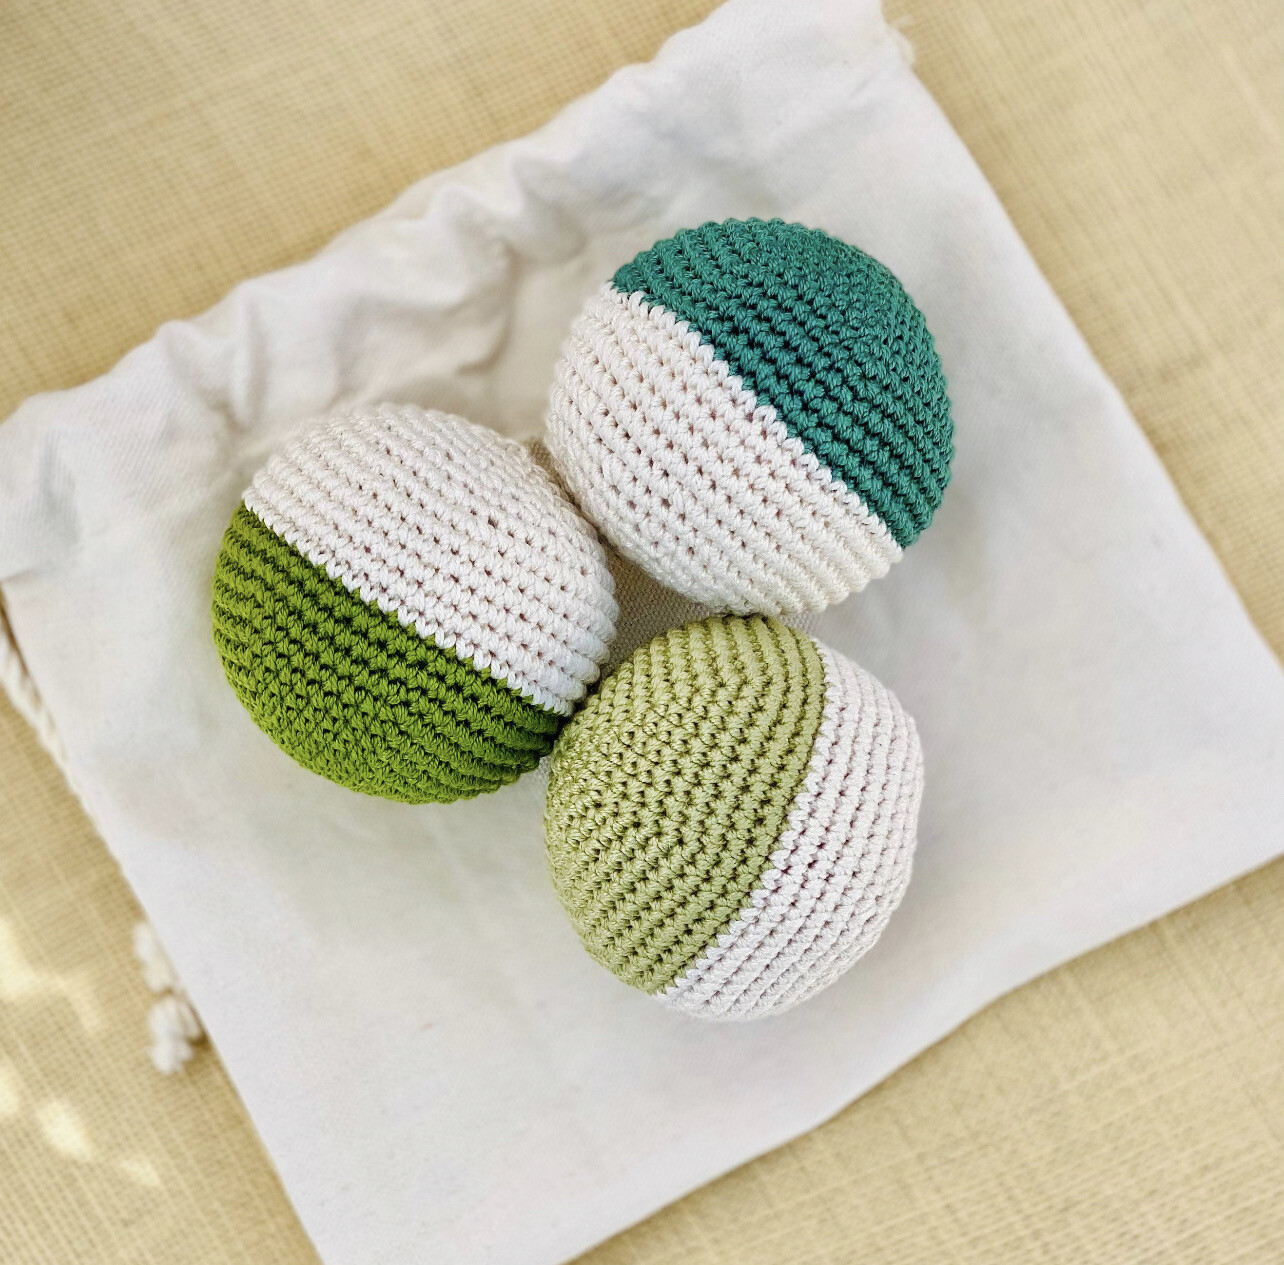 Crochet Sensory Balls